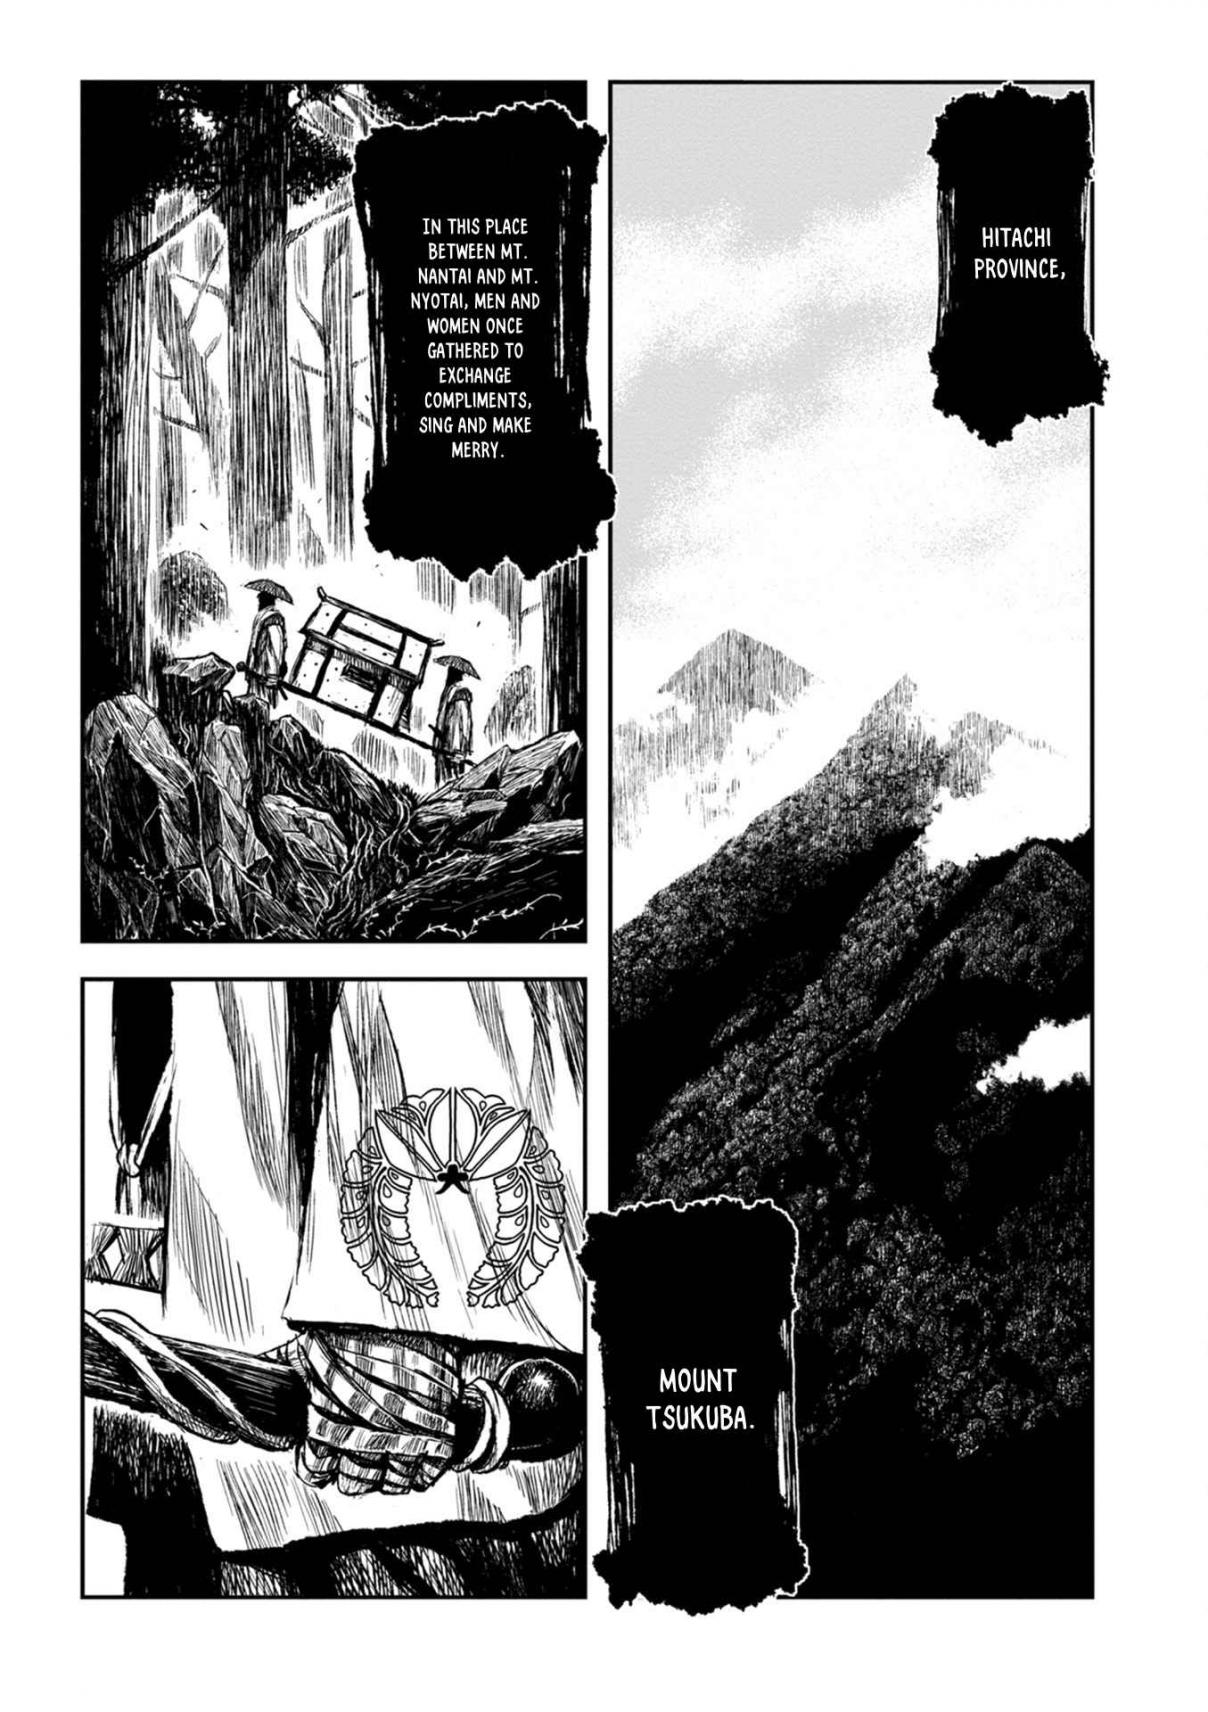 ZINGNIZE Vol. 1 Ch. 1 Kosaka Jinnai